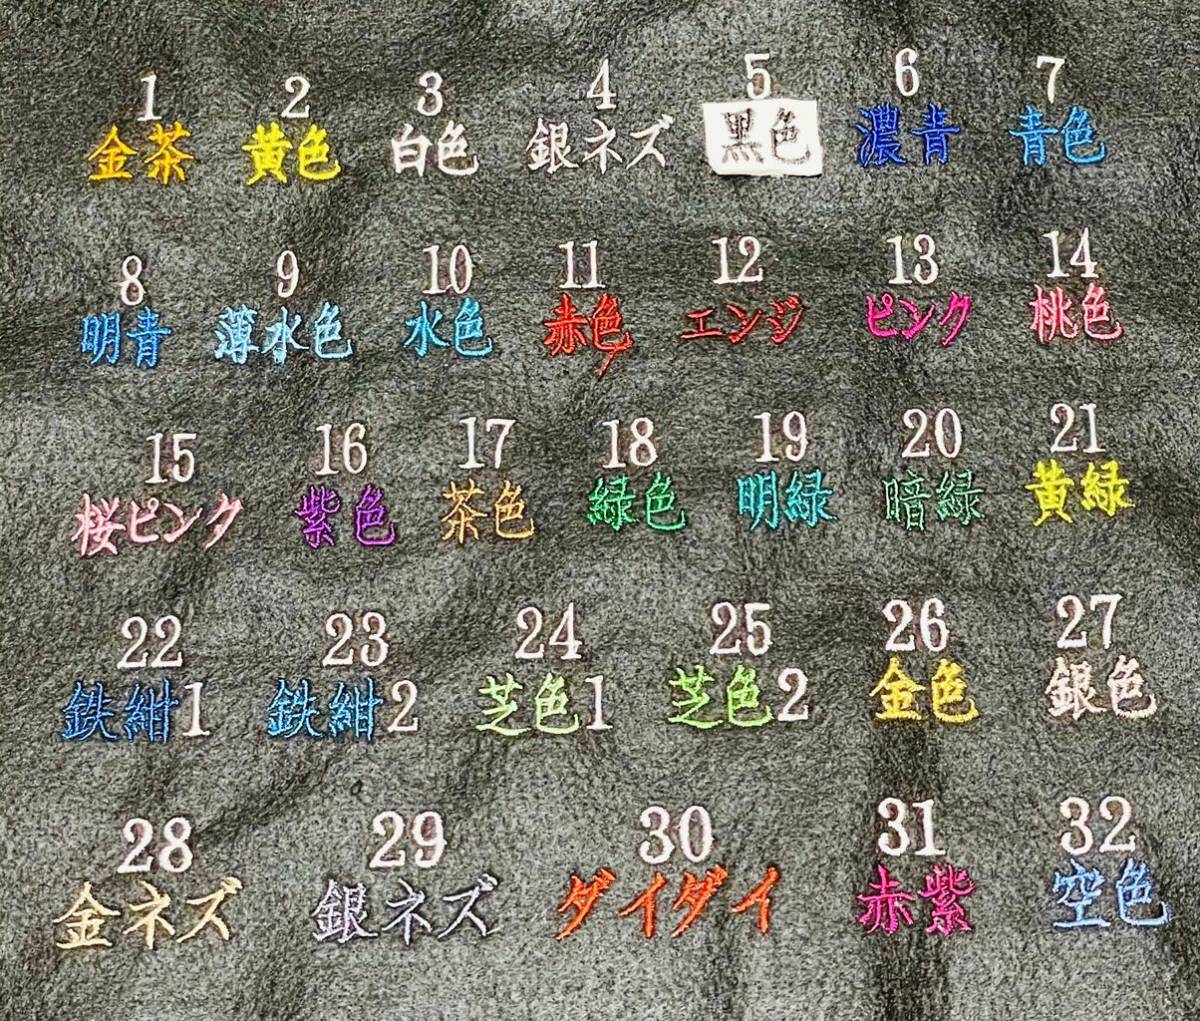  kendo для вышивка сидэ название .* сидэ номер * сидэ имя ( сверху английский язык модель )* одна сторона *No.637